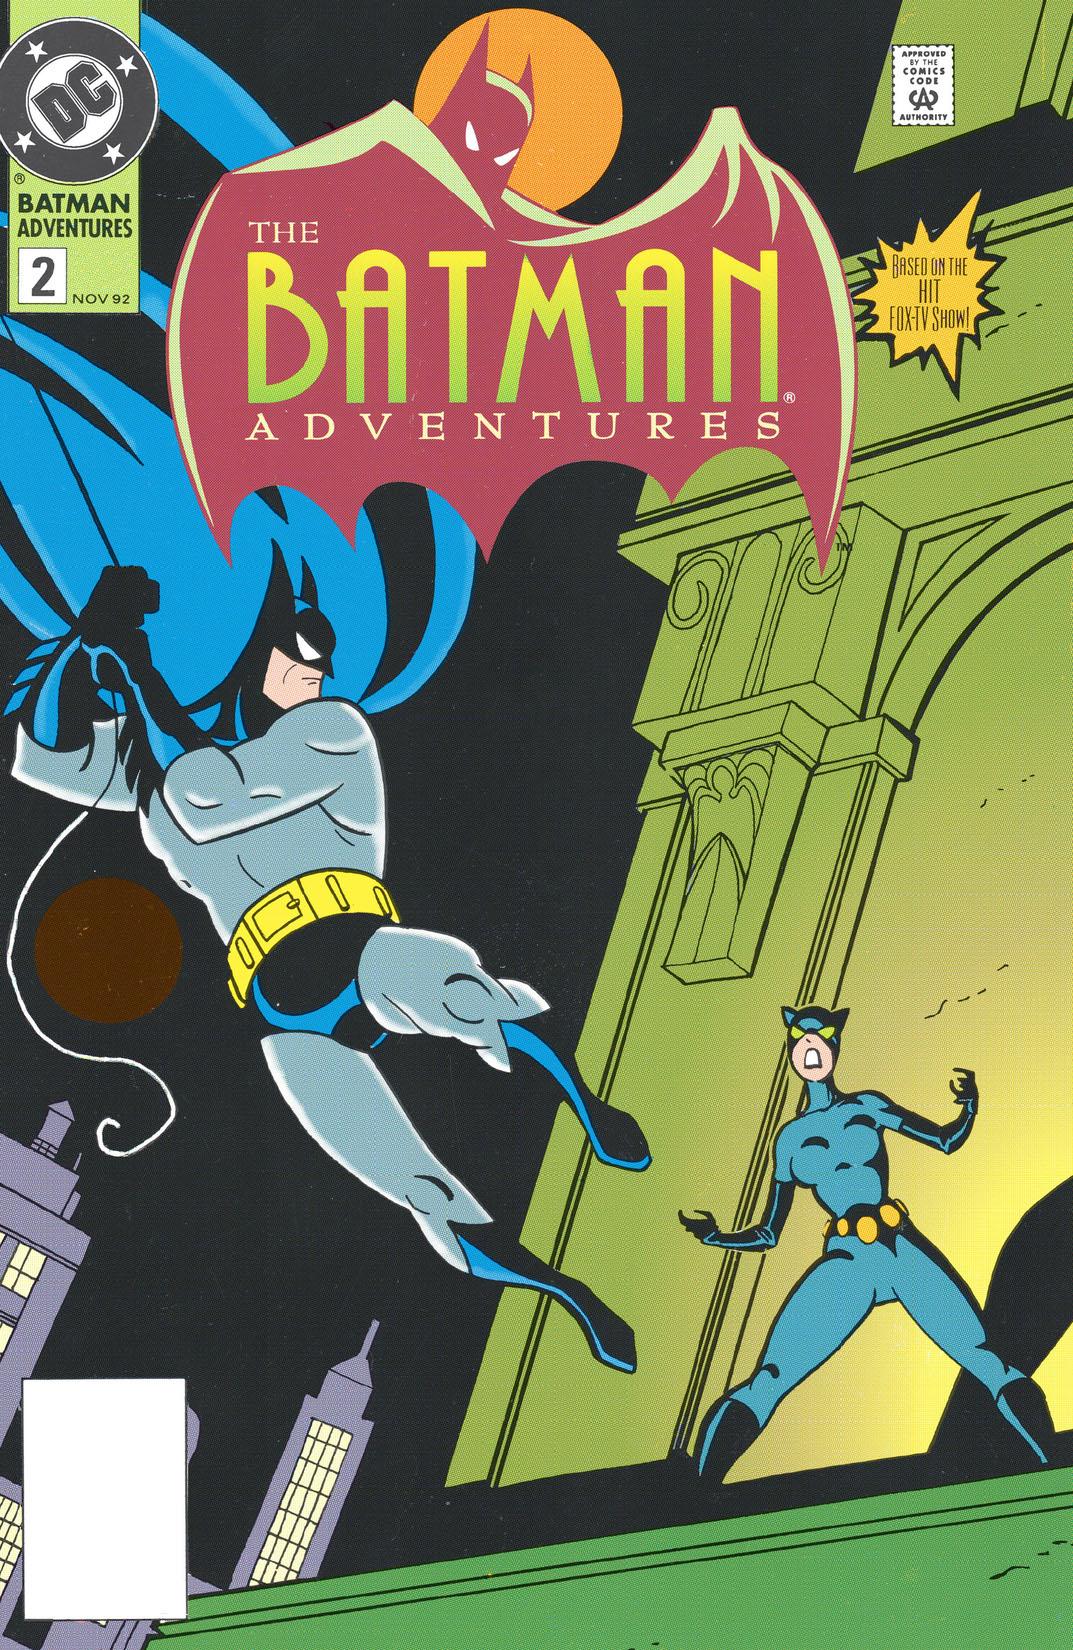 The Batman Adventures #2 preview images